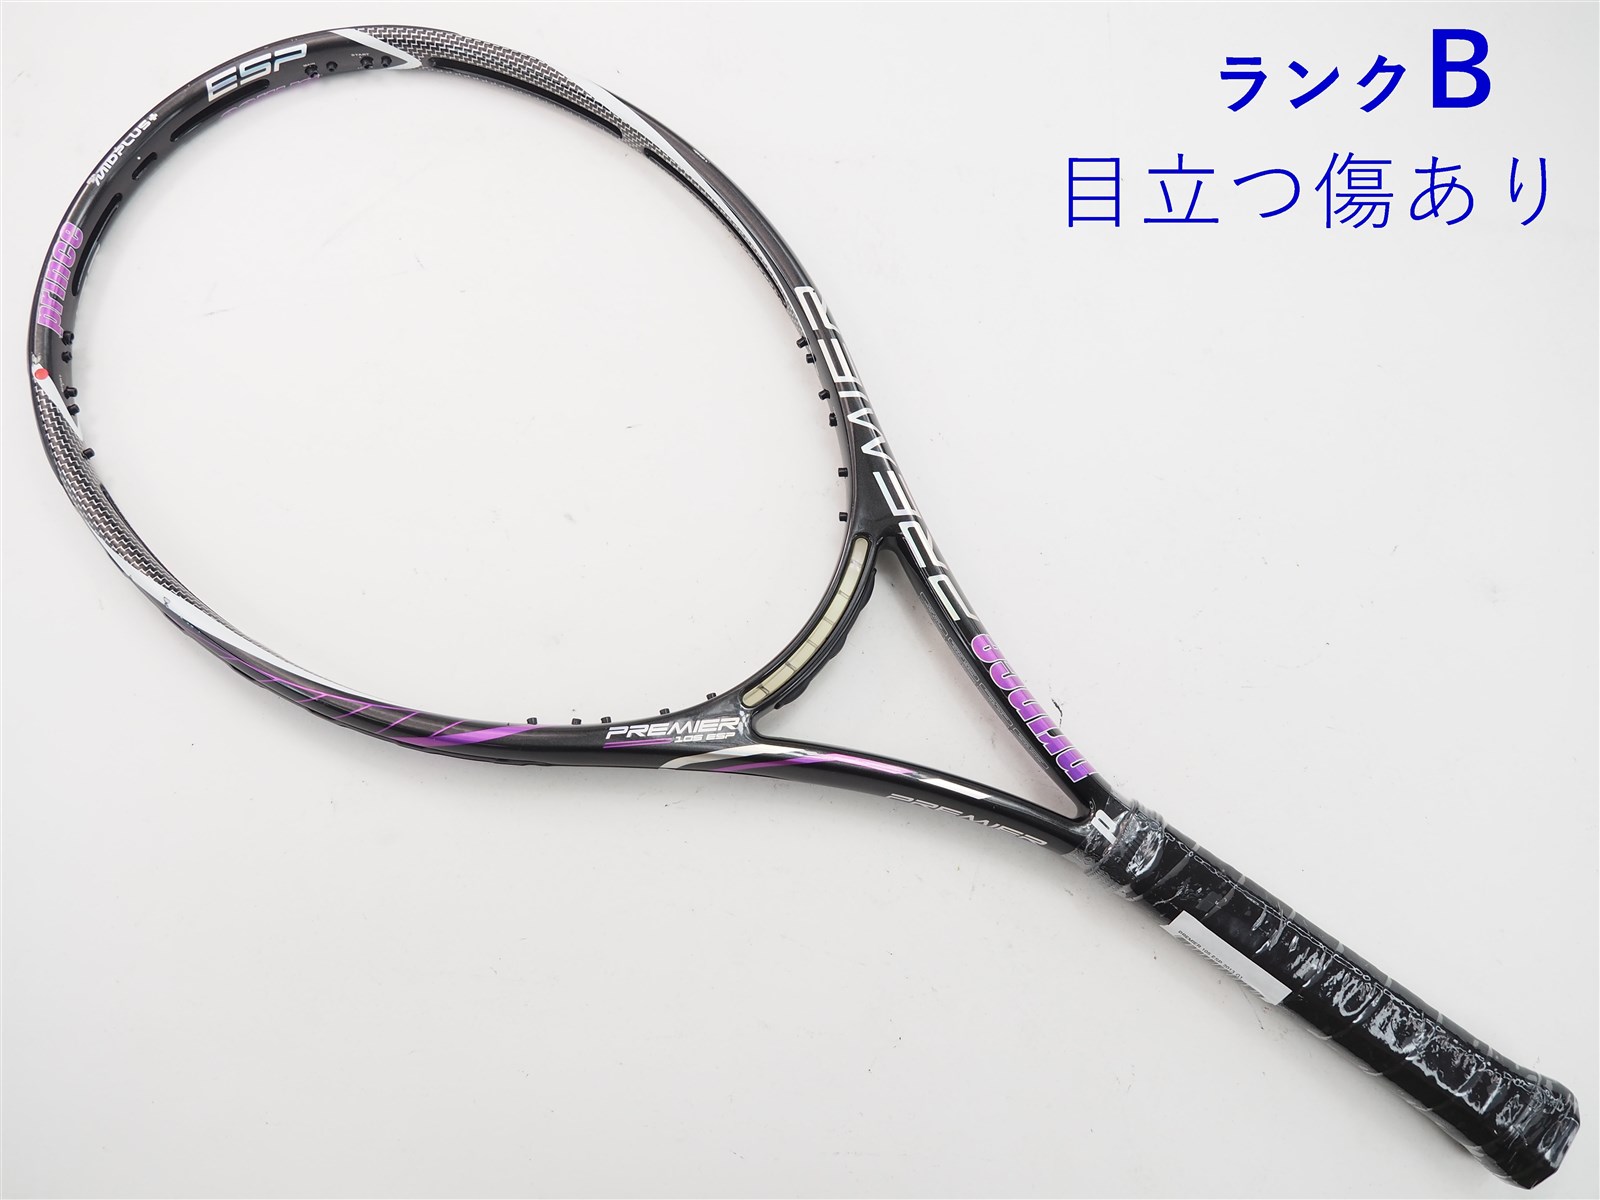 テニスラケット プリンス プレミア 105 ESP 2013年モデル (G1)PRINCE